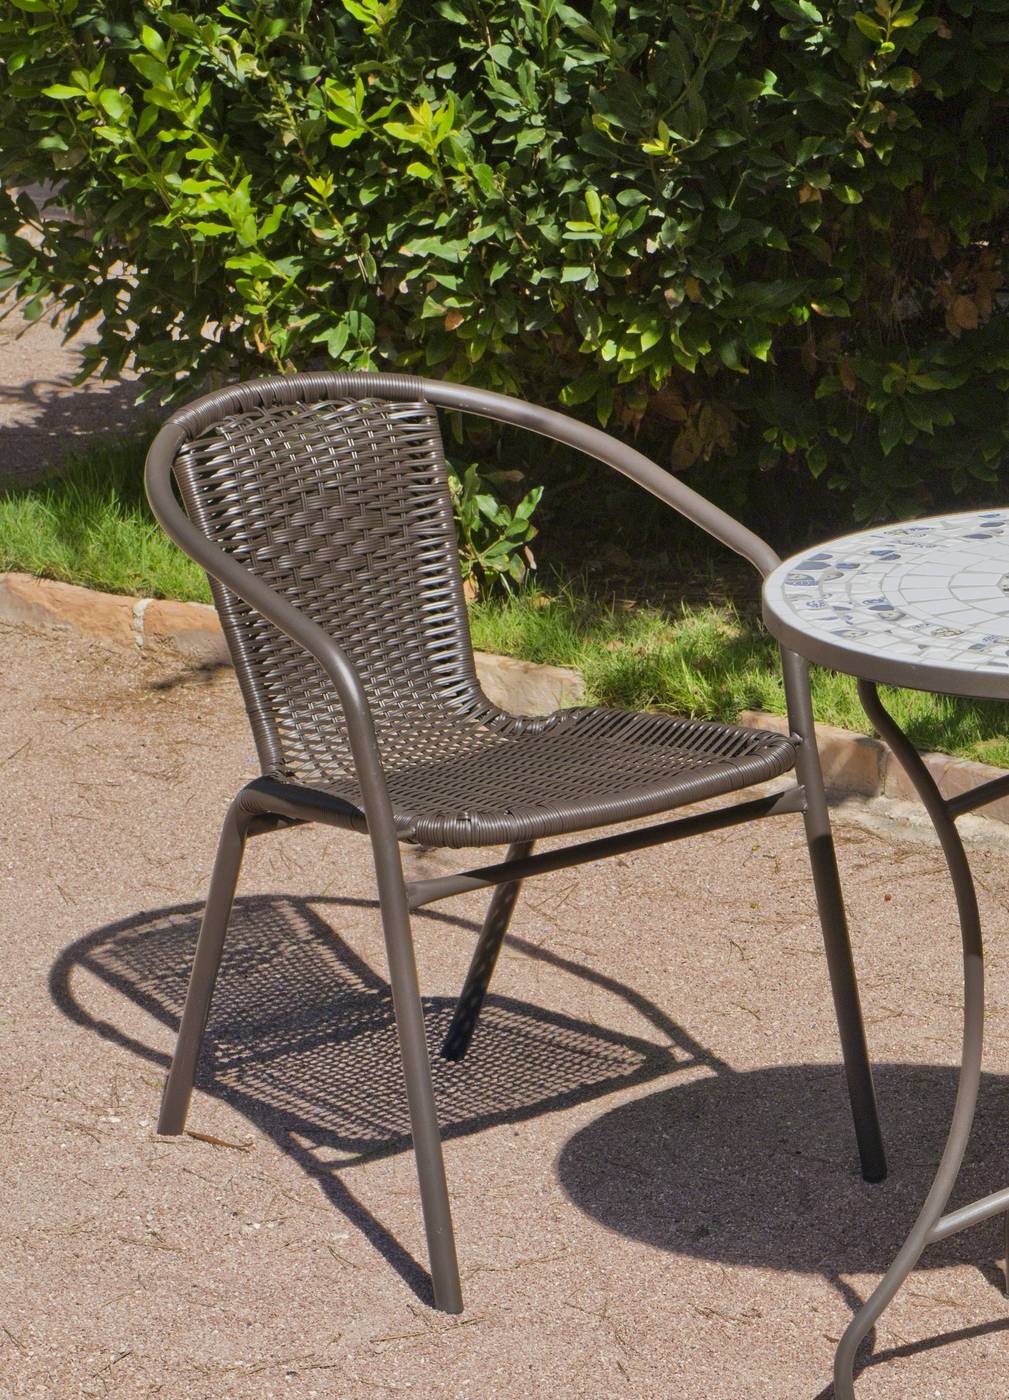 Set Acero Brasil-90 - Conjunto de acero color bronce: mesa redonda de 90 cm. Con tapa de cristal templado y 4 sillones apilables de wicker reforzado